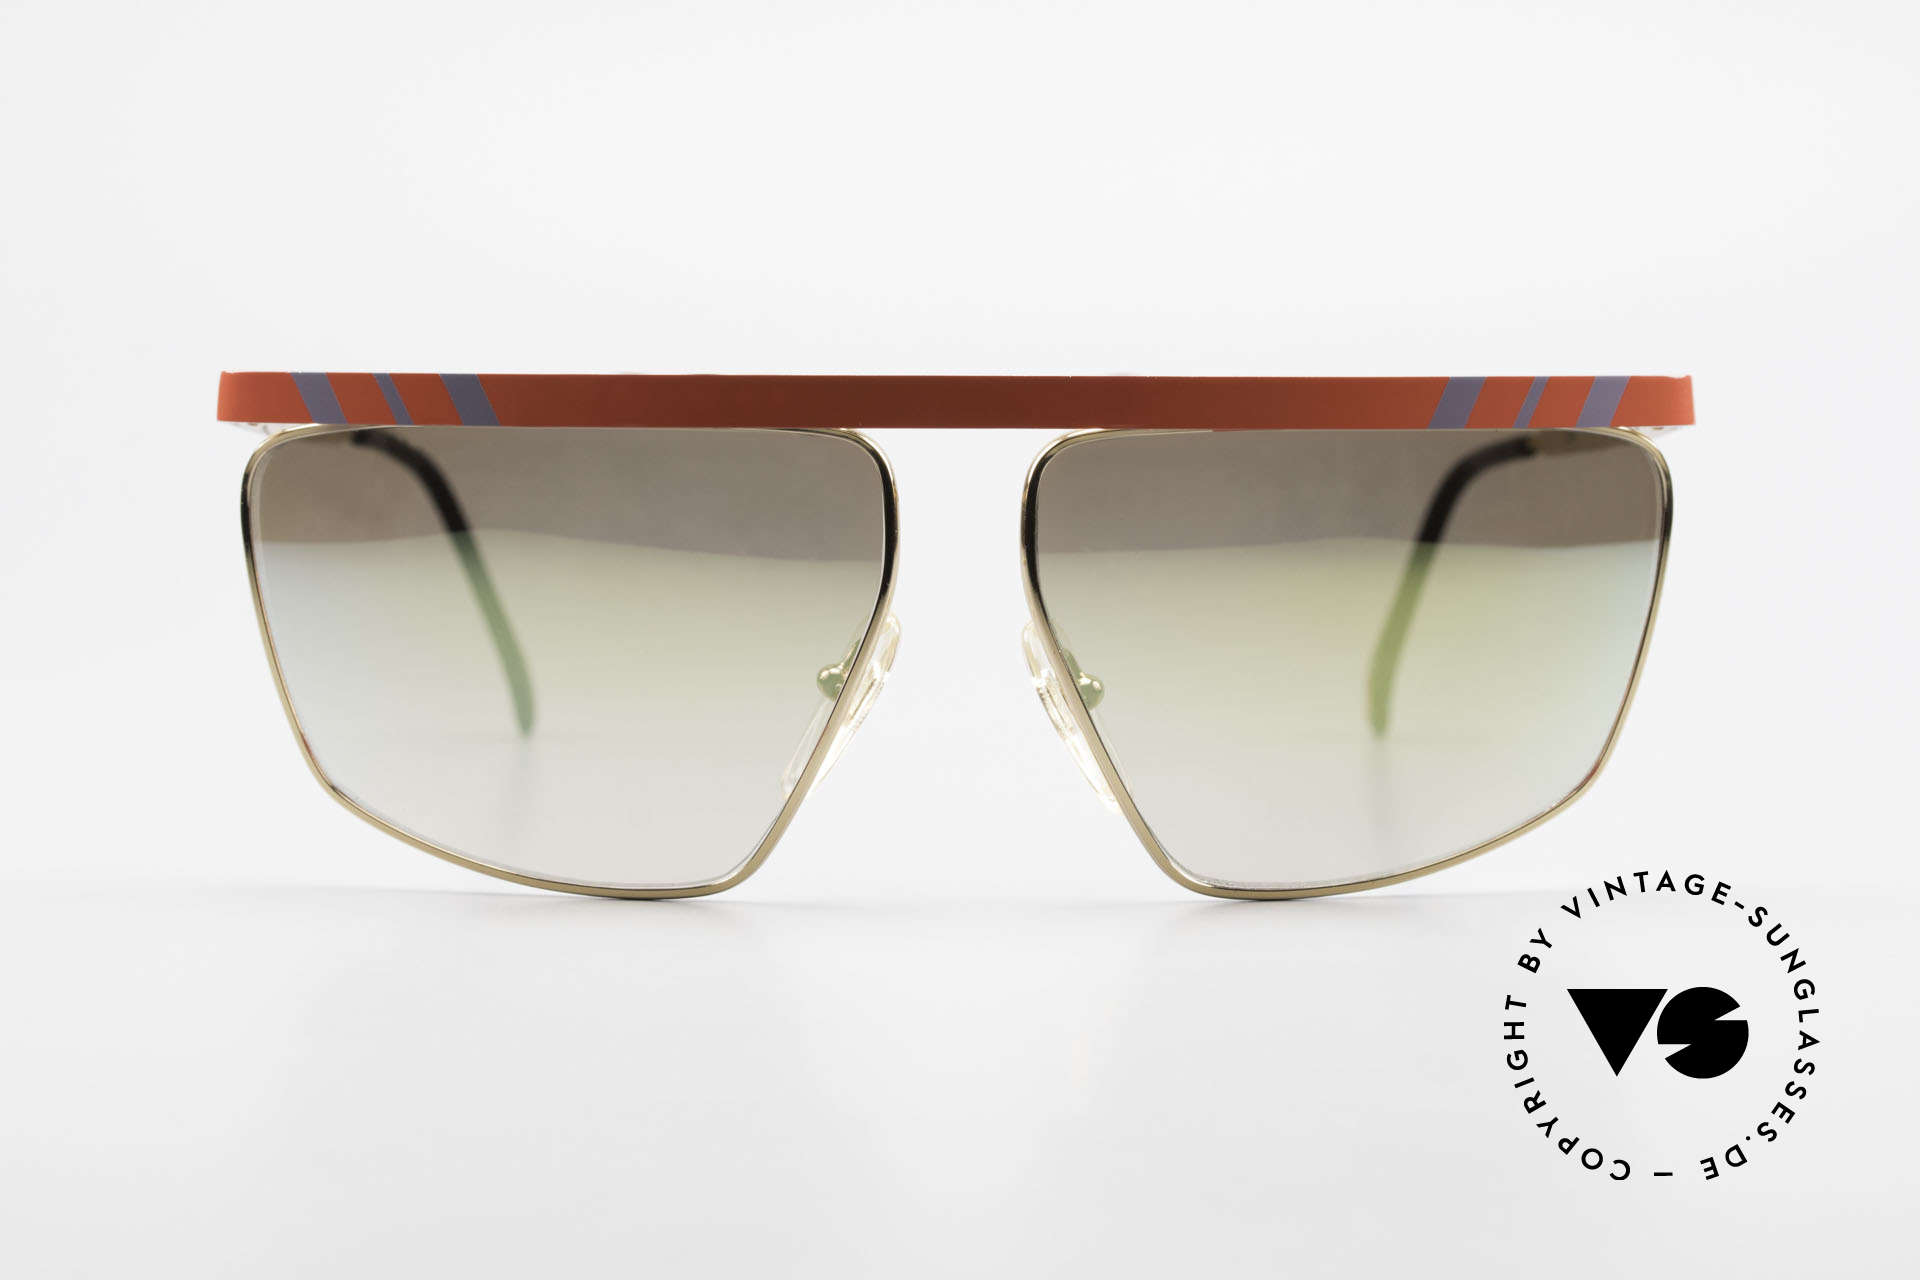 Casanova CN7 Luxus Sonnenbrille Verspiegelt, vergoldeter Rahmen mit Akzenten in Rot und Grau, Passend für Herren und Damen